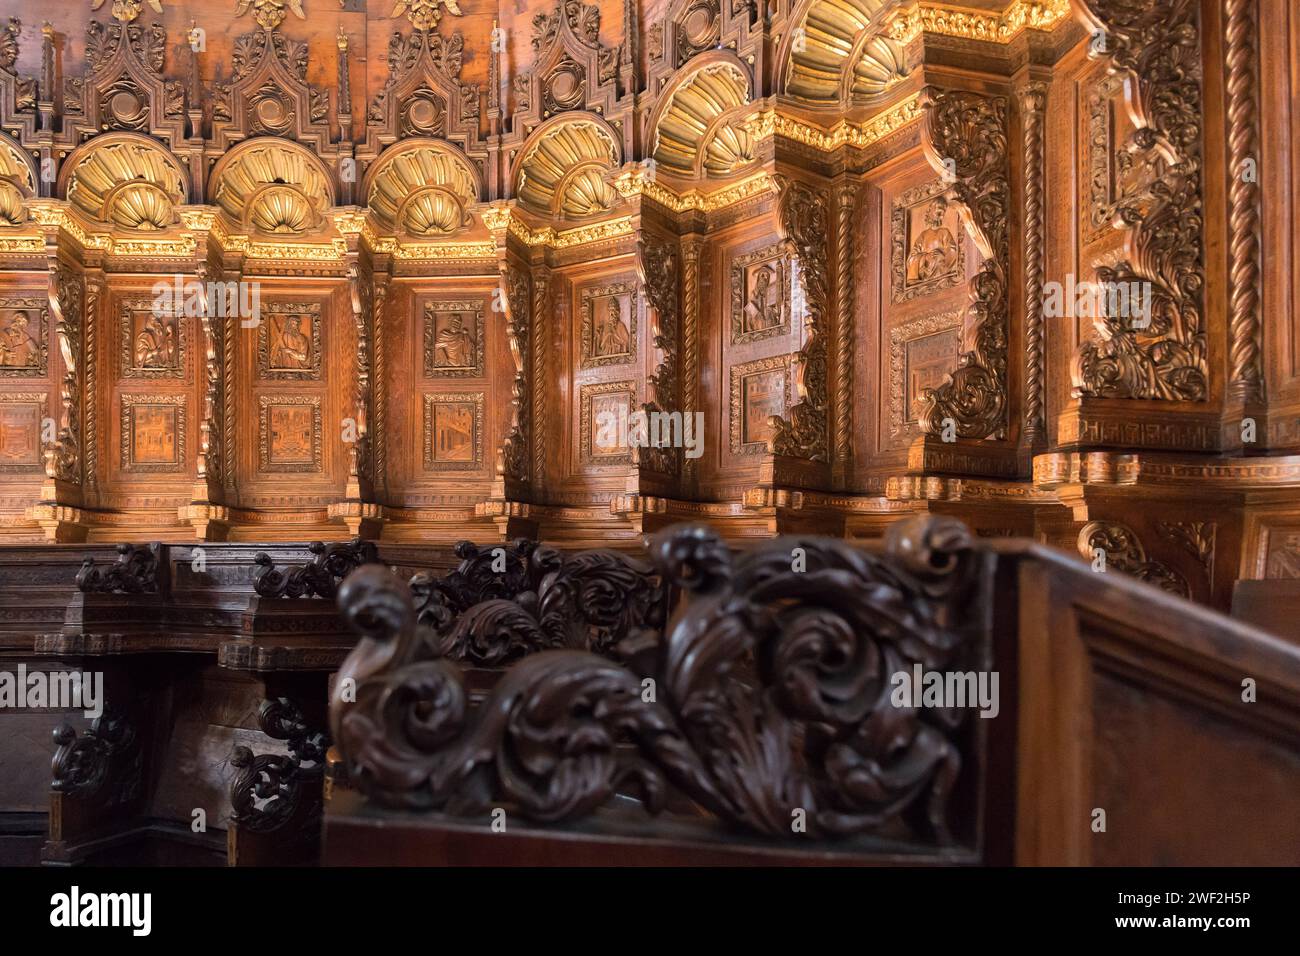 Coro gotico ligneo dei Frati di Marco e Francesco Cozzi del XV secolo nella Basilica gotica di Santa Maria Gloriosa dei Frari i Foto Stock